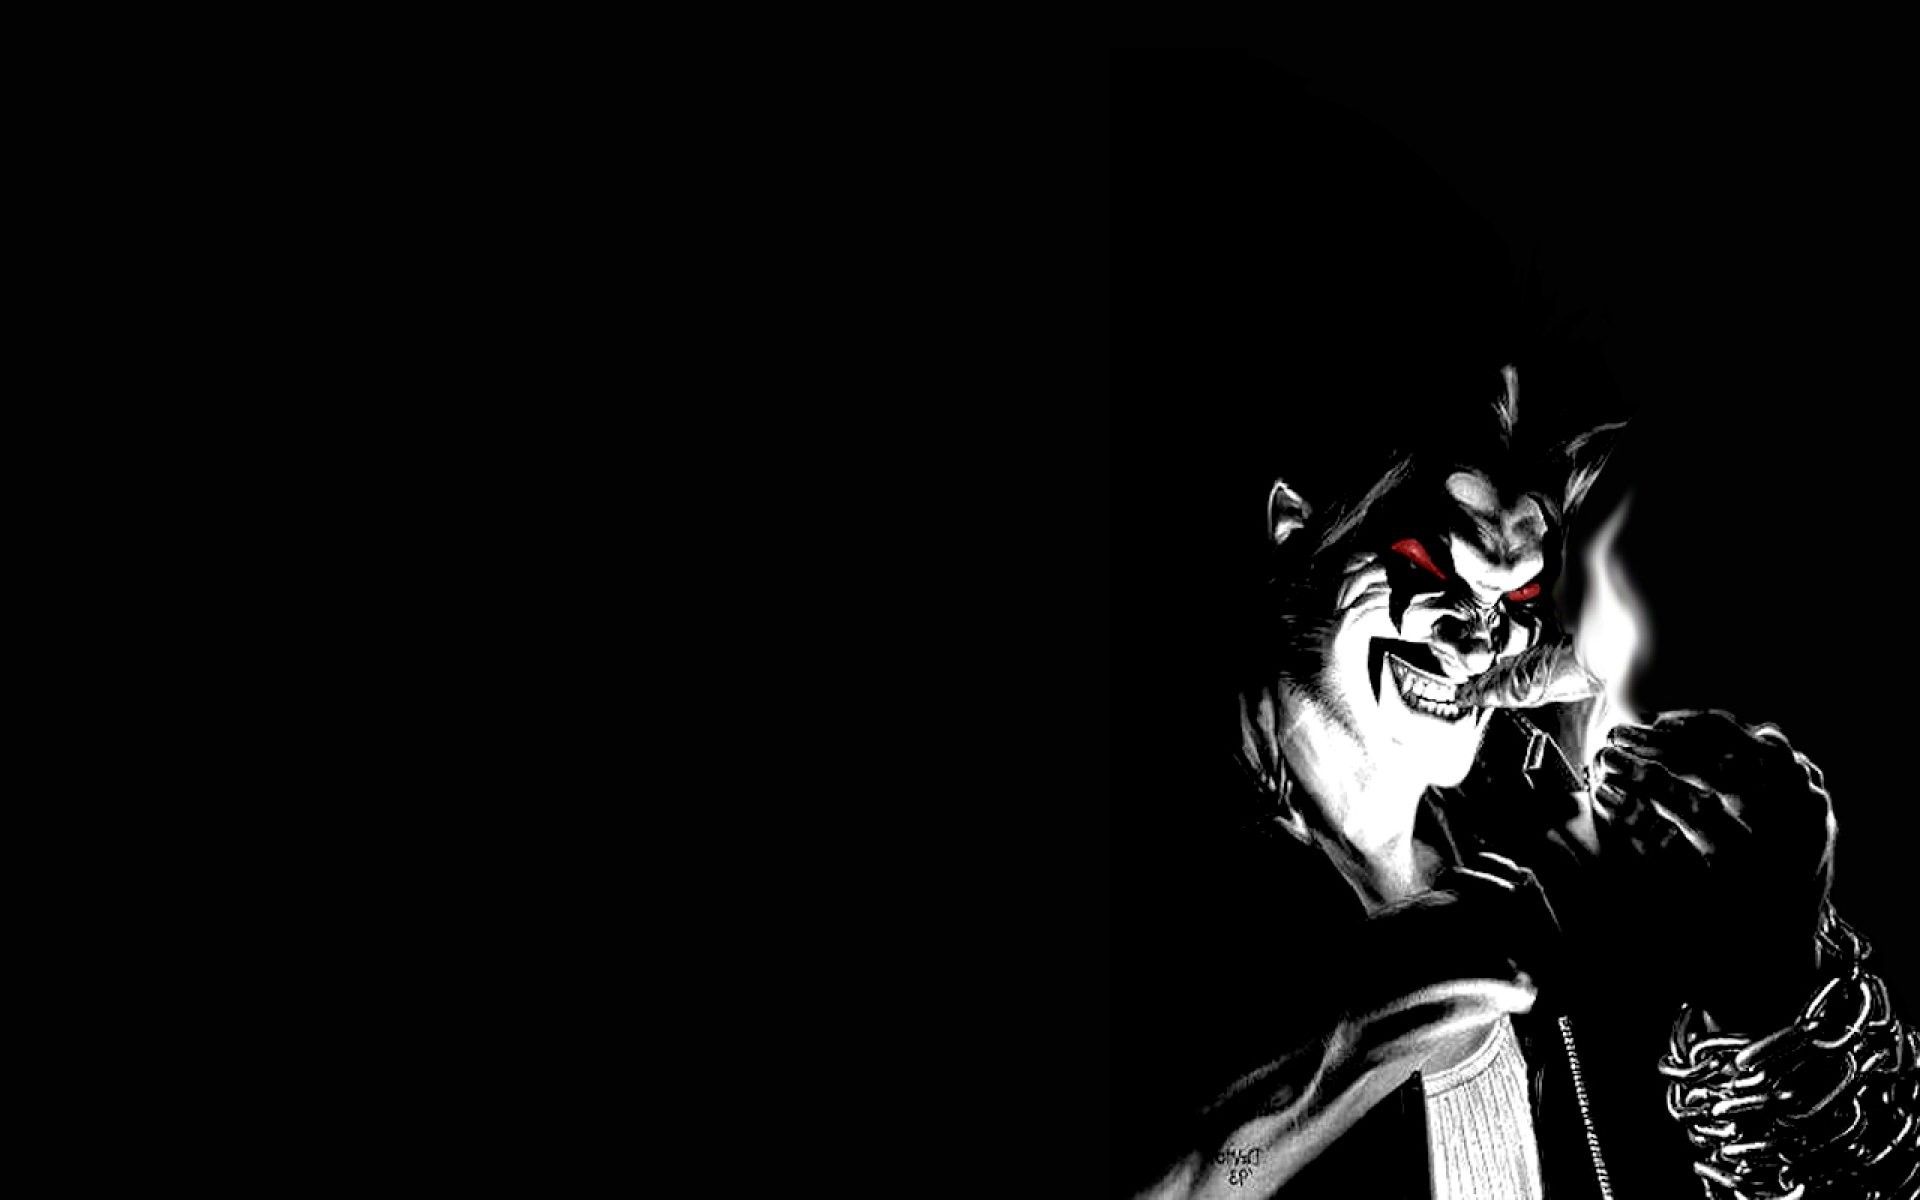 4k horror wallpaper,erfundener charakter,superschurke,dunkelheit,schwarz und weiß,illustration